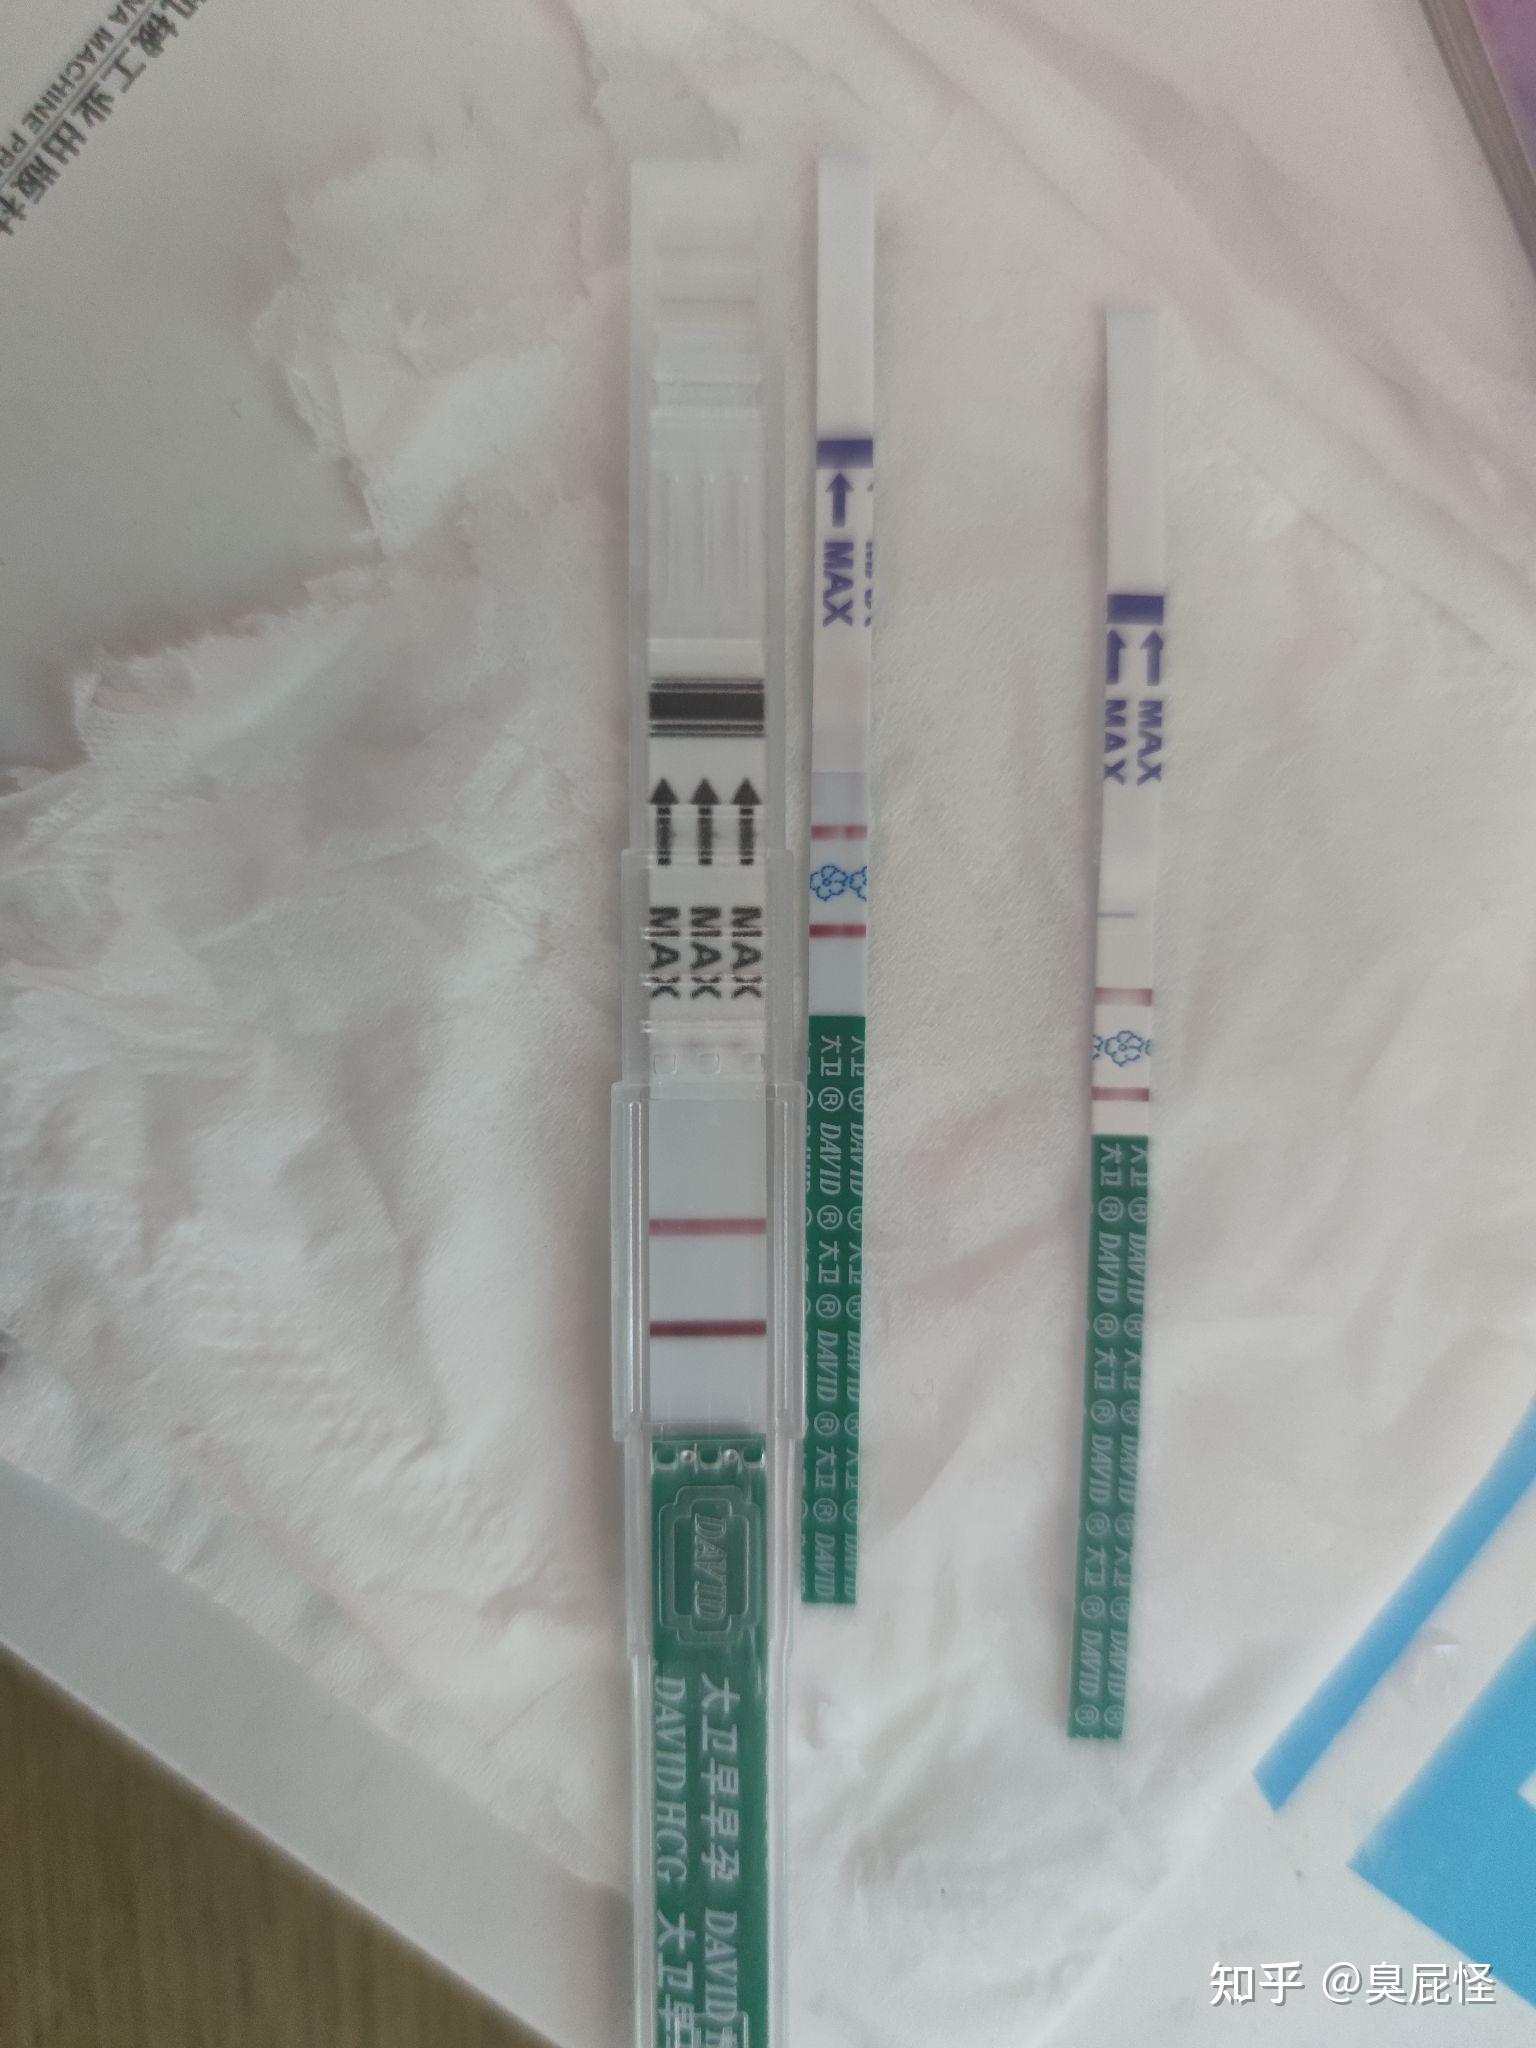 大卫早早孕(HCG)检测试笔-1支装 伊康纳斯生物医药科技股份有限公司